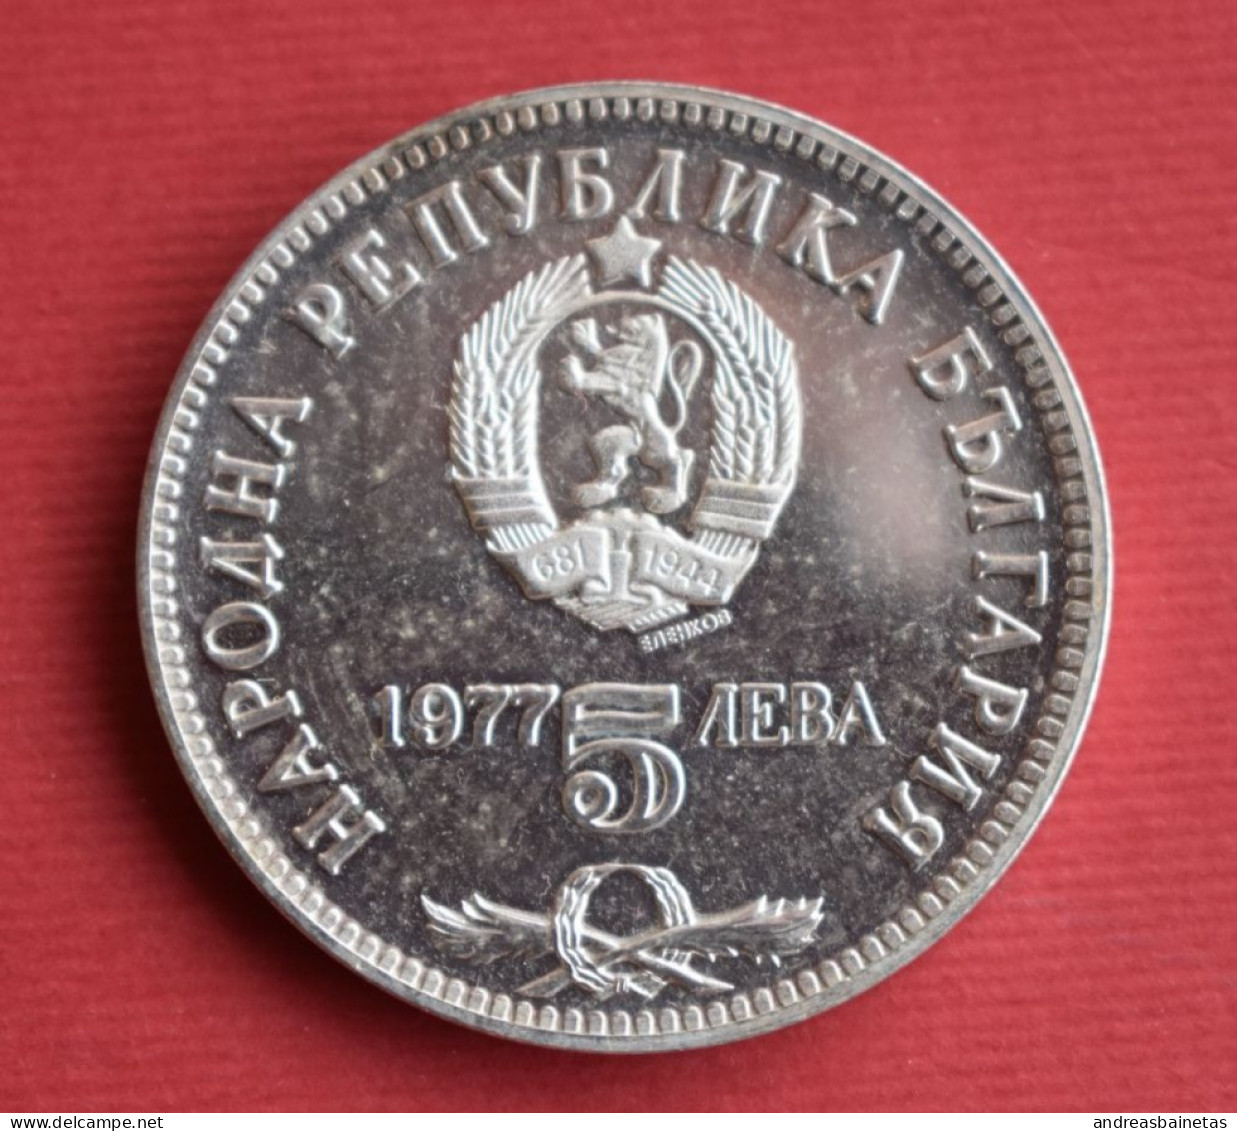 Coins Bulgaria 5 Leva Petko R. Slaveikov	KM# 99 - Bulgarien